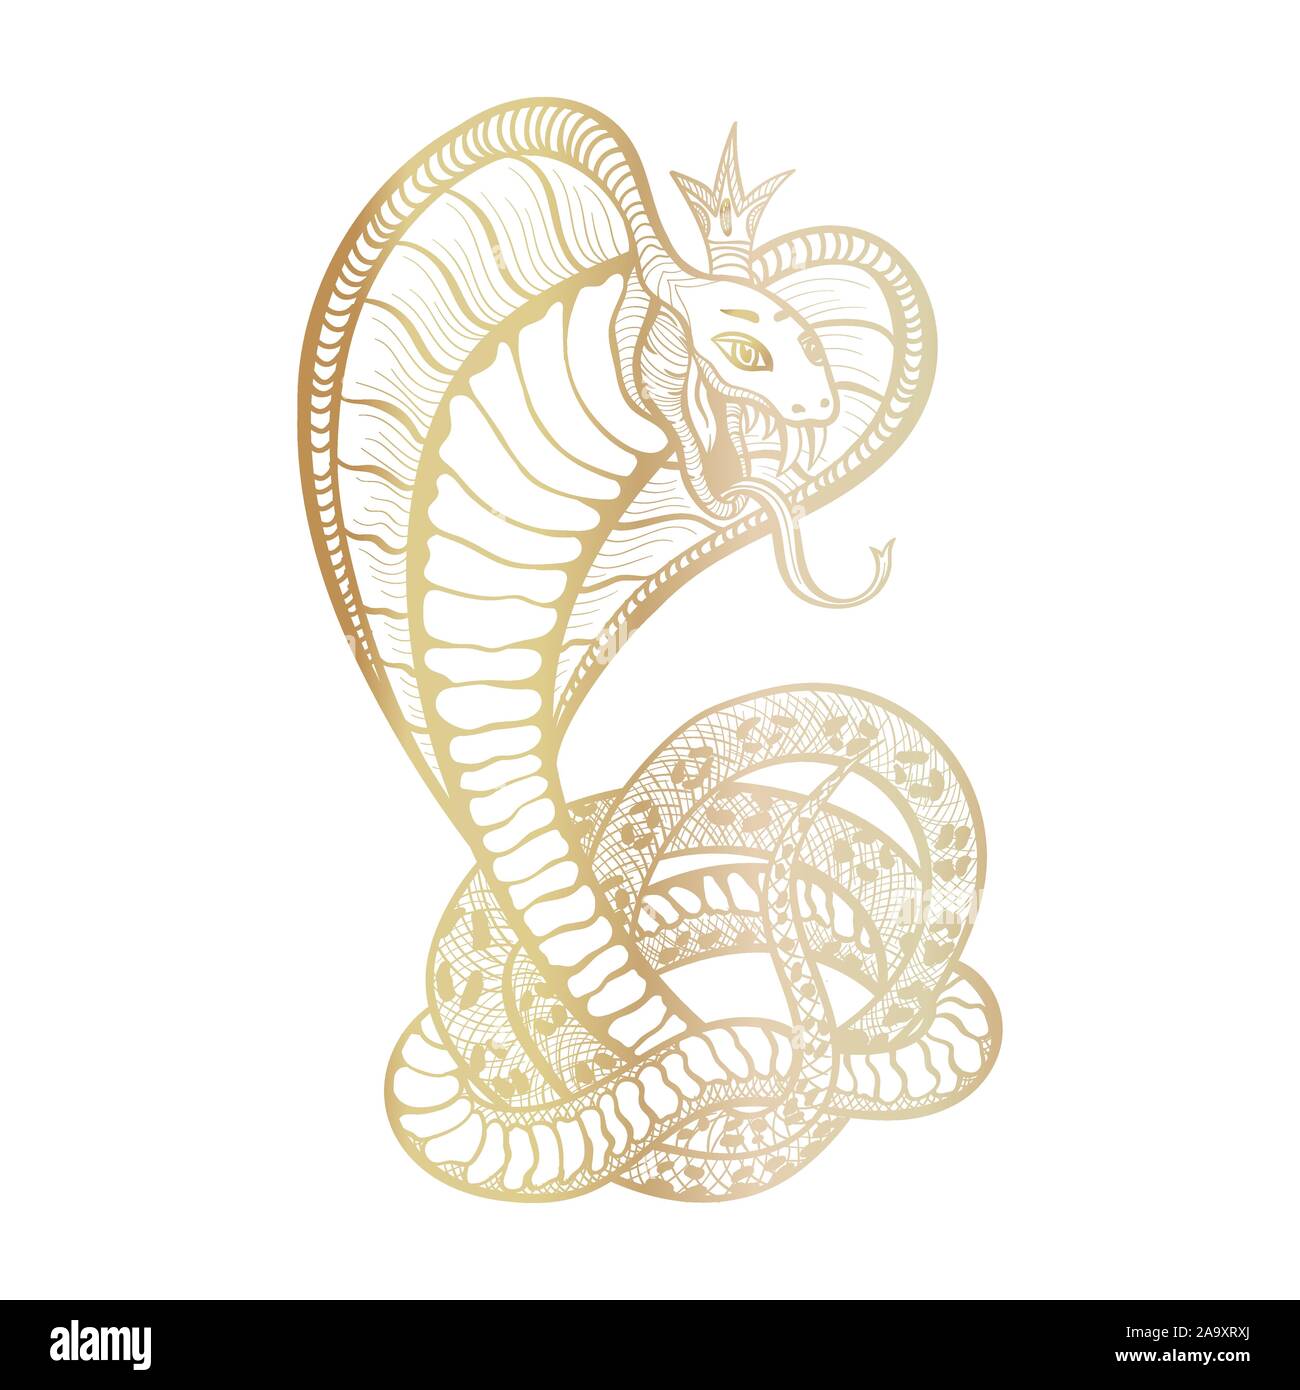 King Cobra mit Kapuze und Krone. Golden Vektor isoliert Viper snake, handgezeichneten Luxus logo für Jagd, Sport Thema. Maskottchen tattoo Vorlage mit Zähne und Zunge. Weibliche Charakter. Stock Vektor